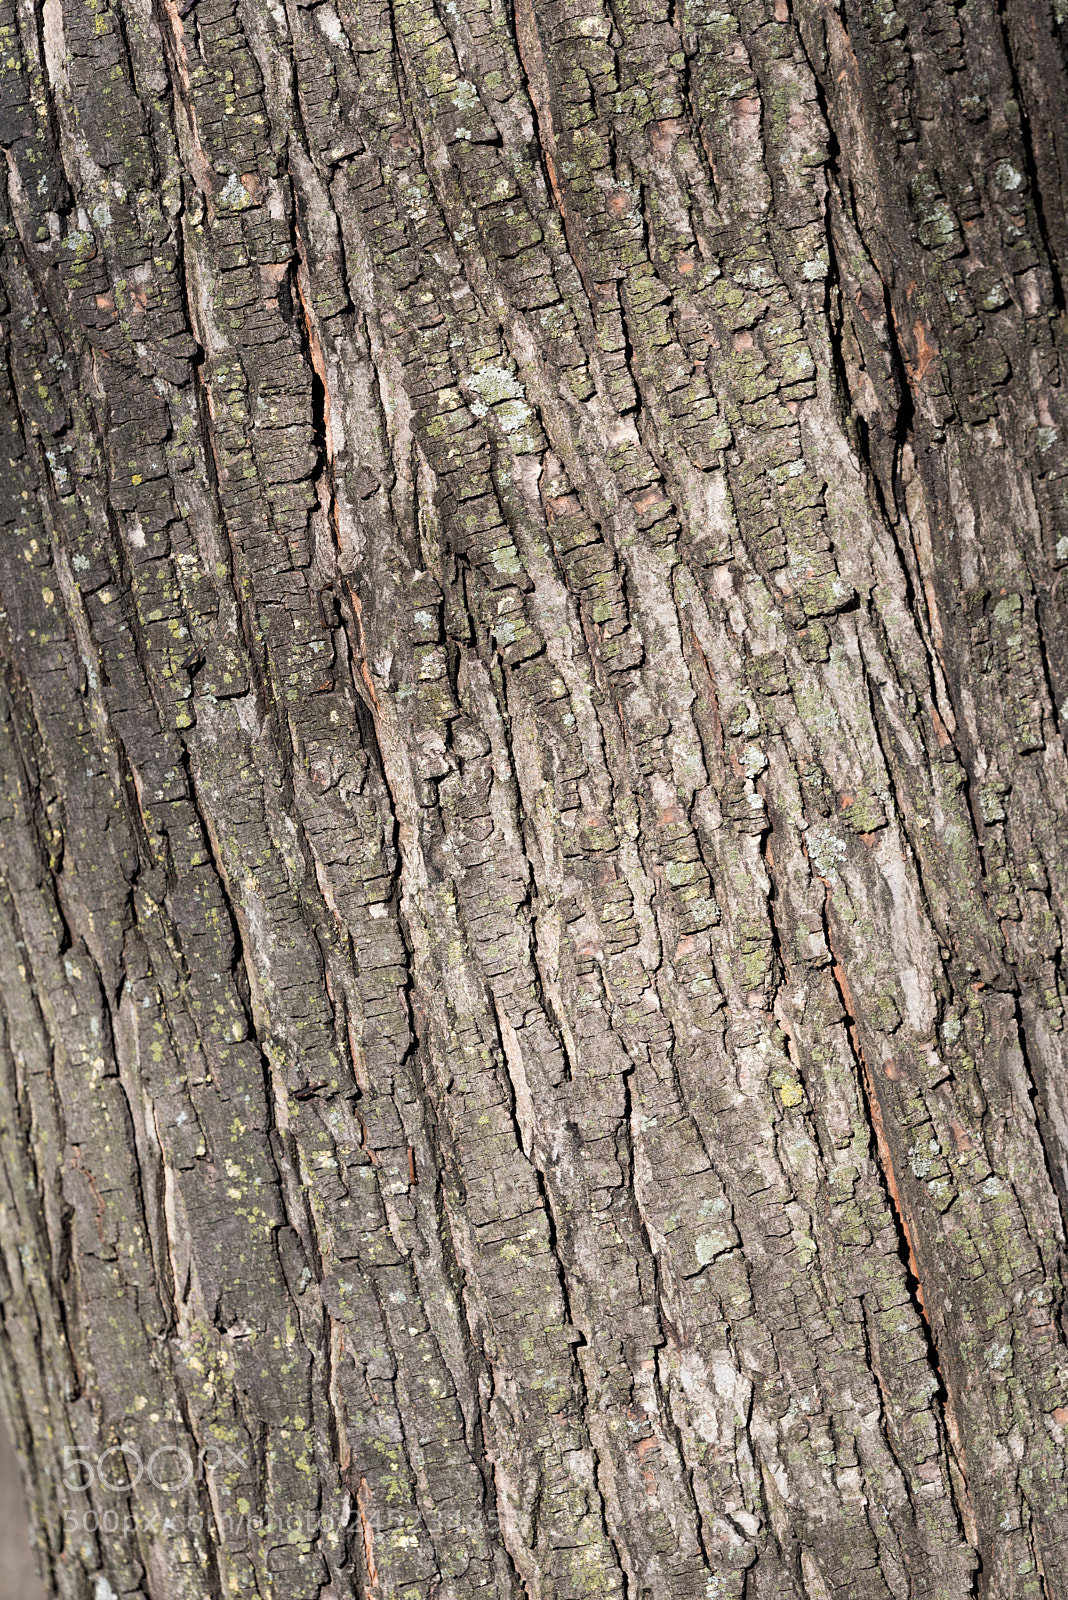 Nikon D750 sample photo. Grey dry tree bark photography